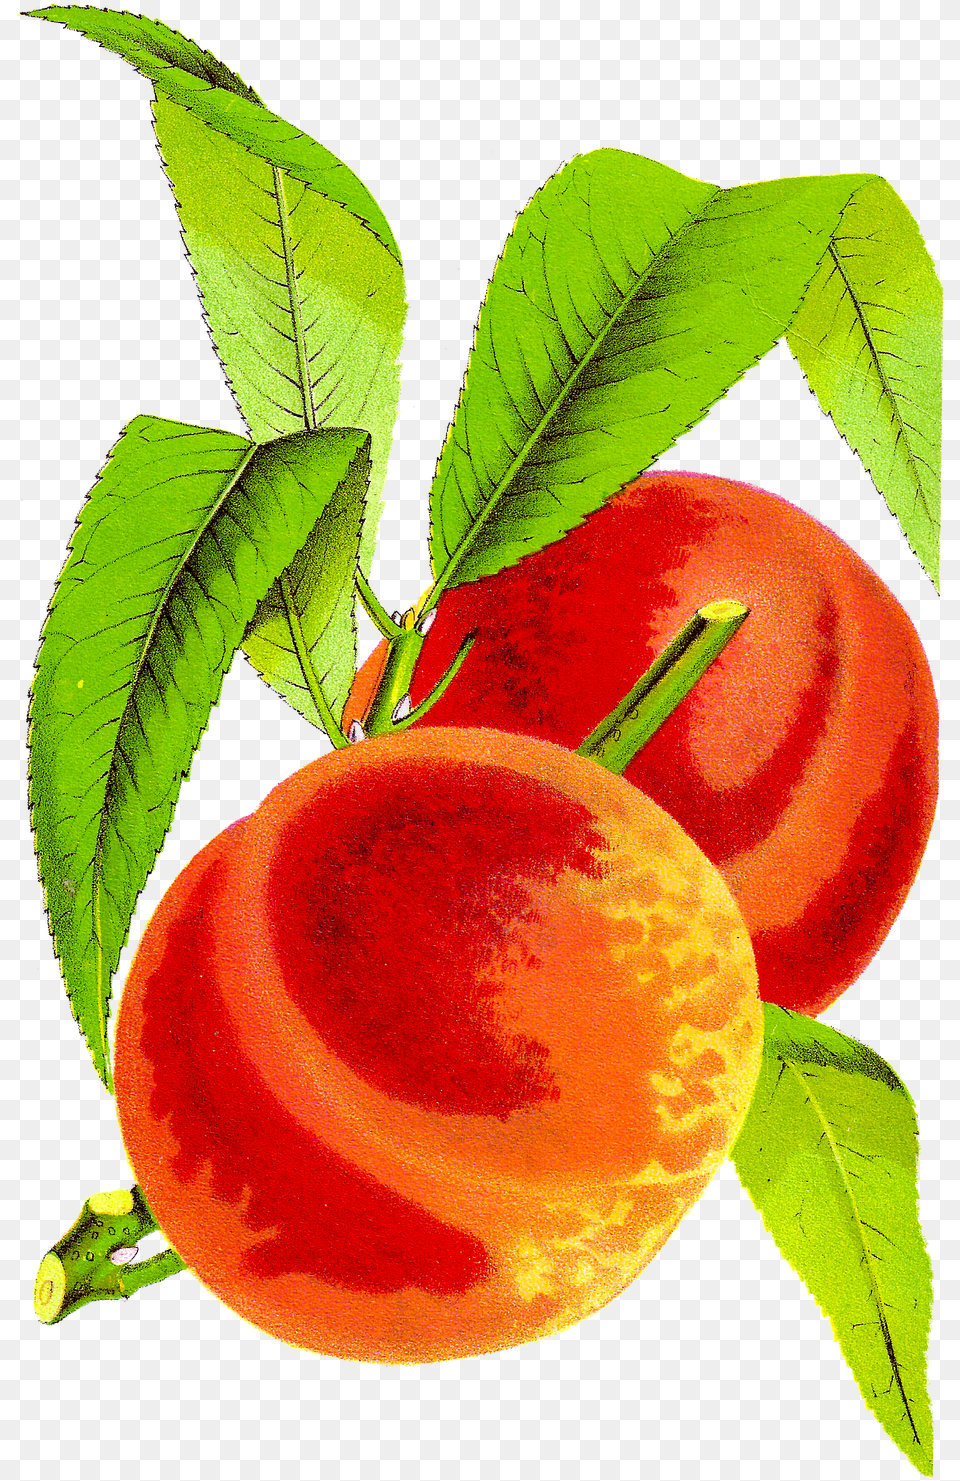 Antique Peach Clipart Peach Cobbler Clip Art, Food, Fruit, Plant, Produce Png